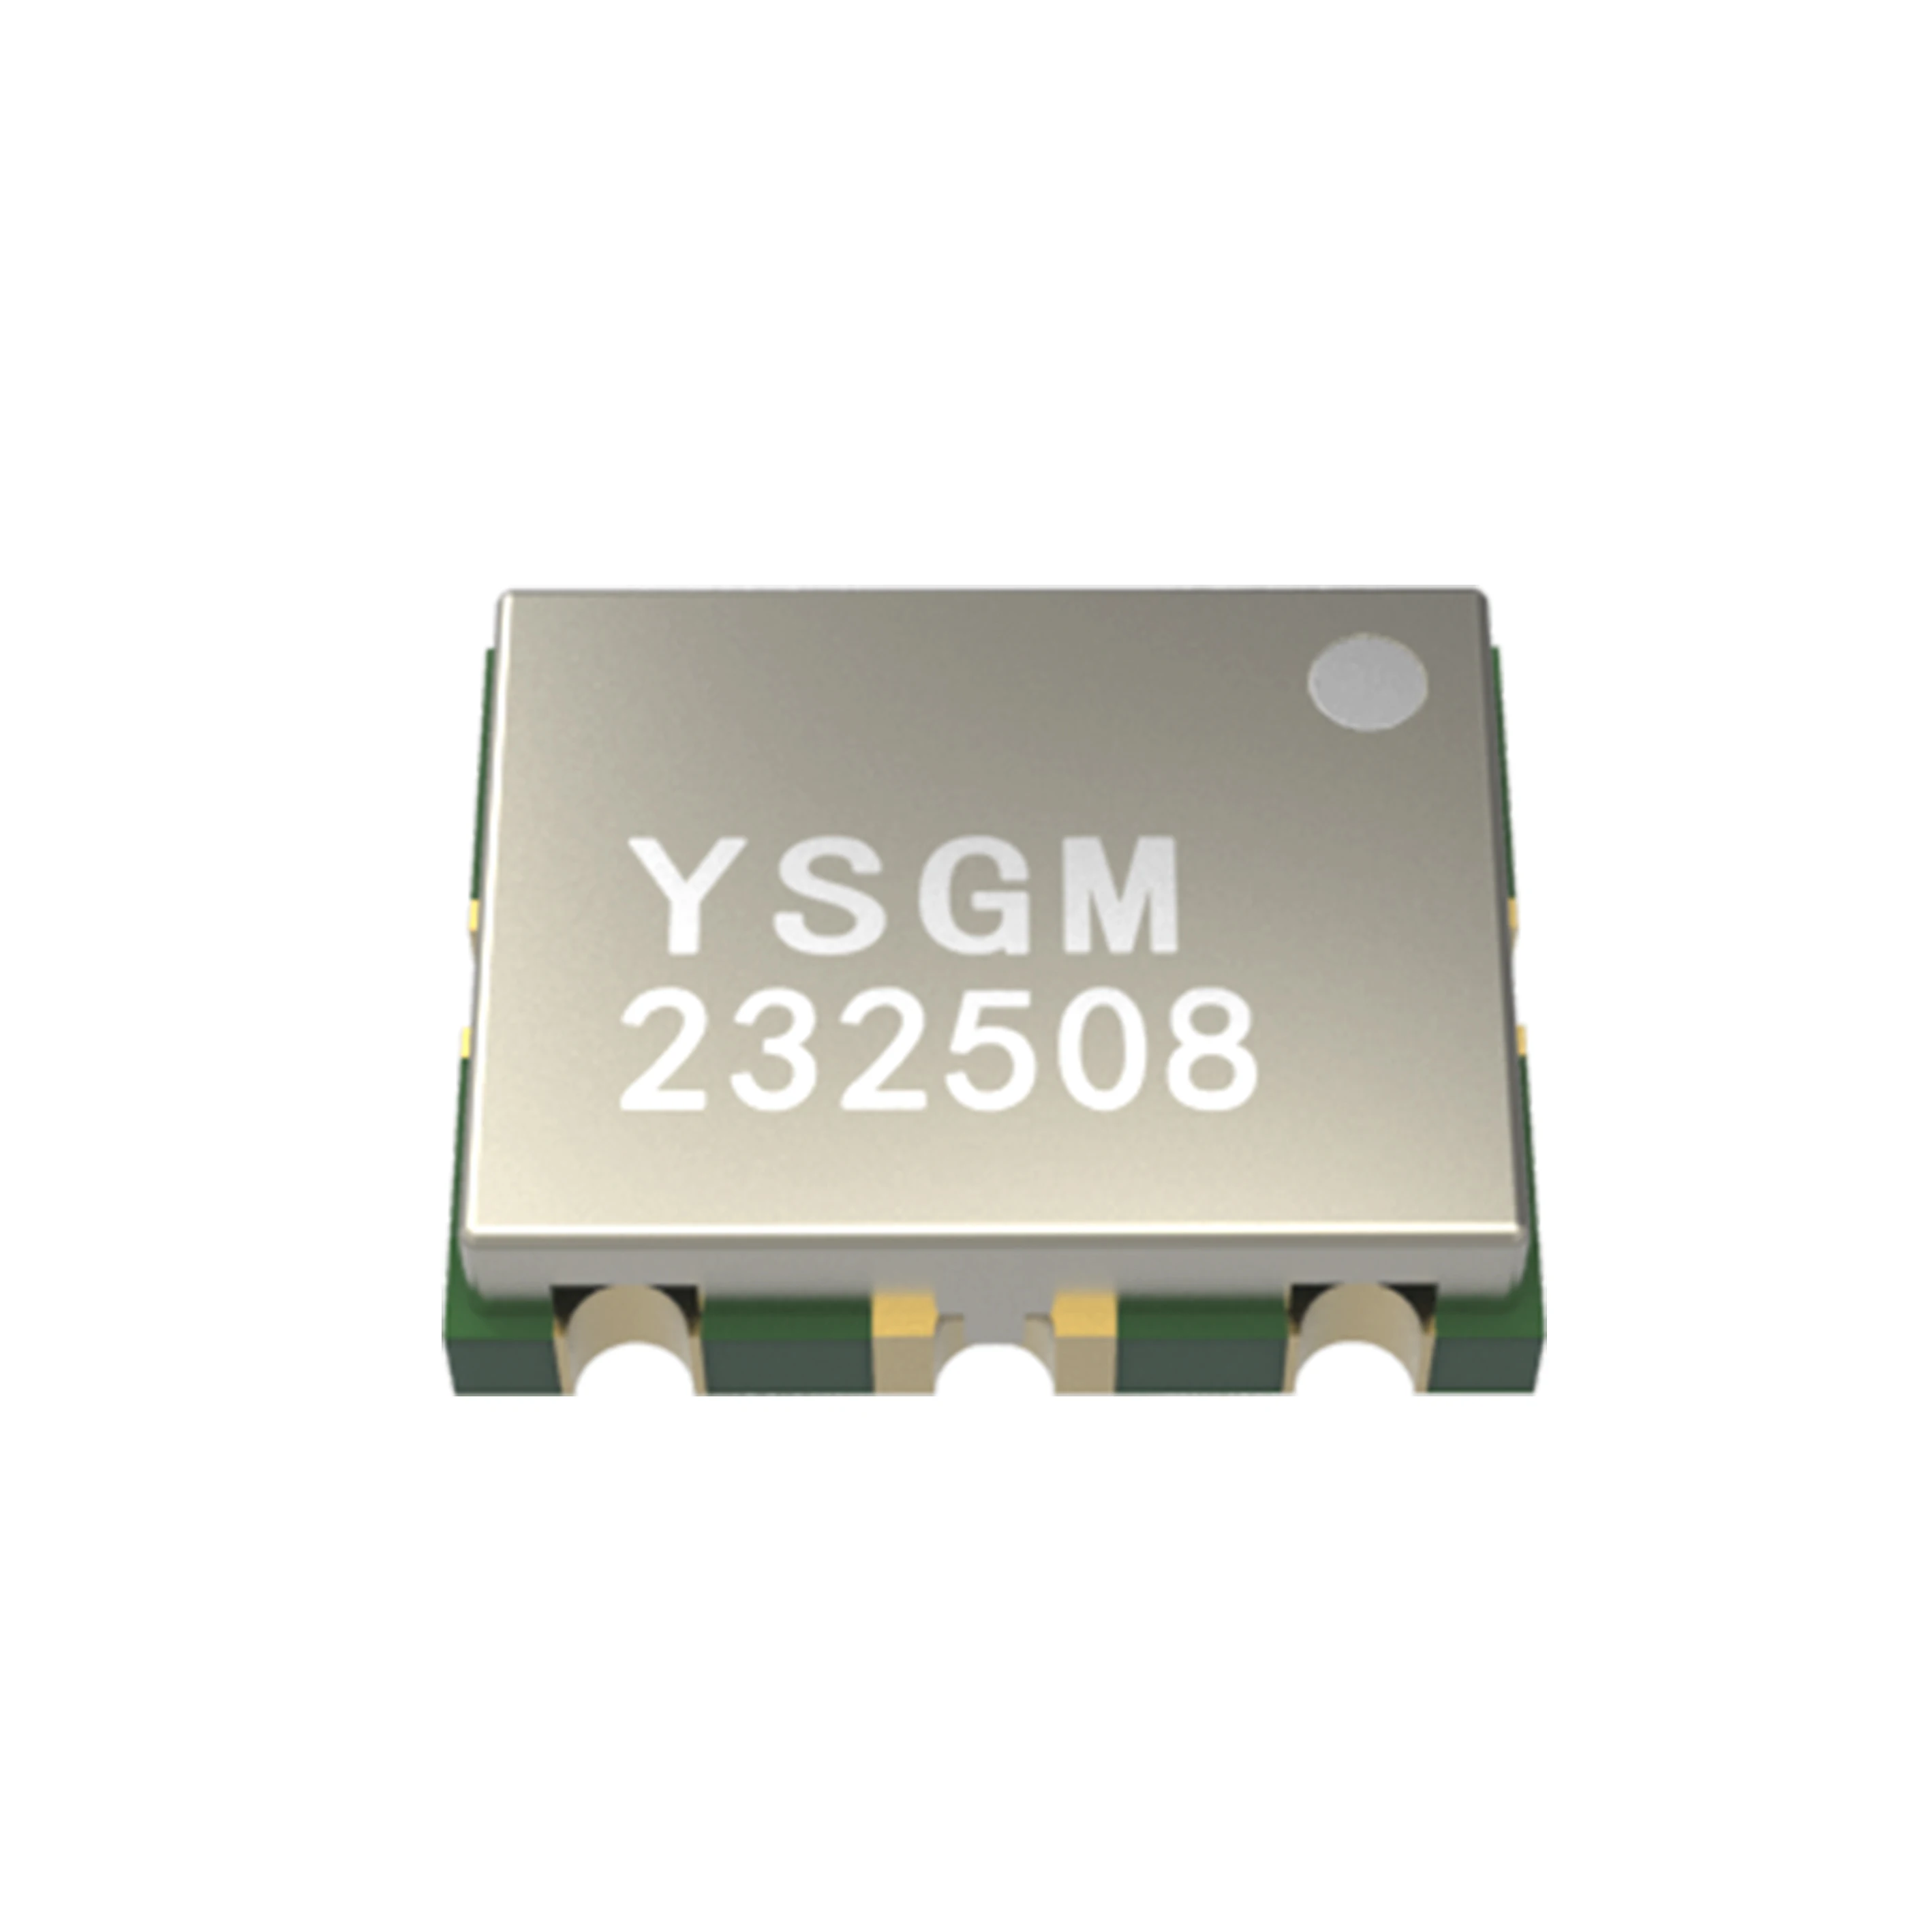 Генератор VCO-напряжения с буферным усилителем для приложений LTE(2300-2390 МГц) и (2400-2483